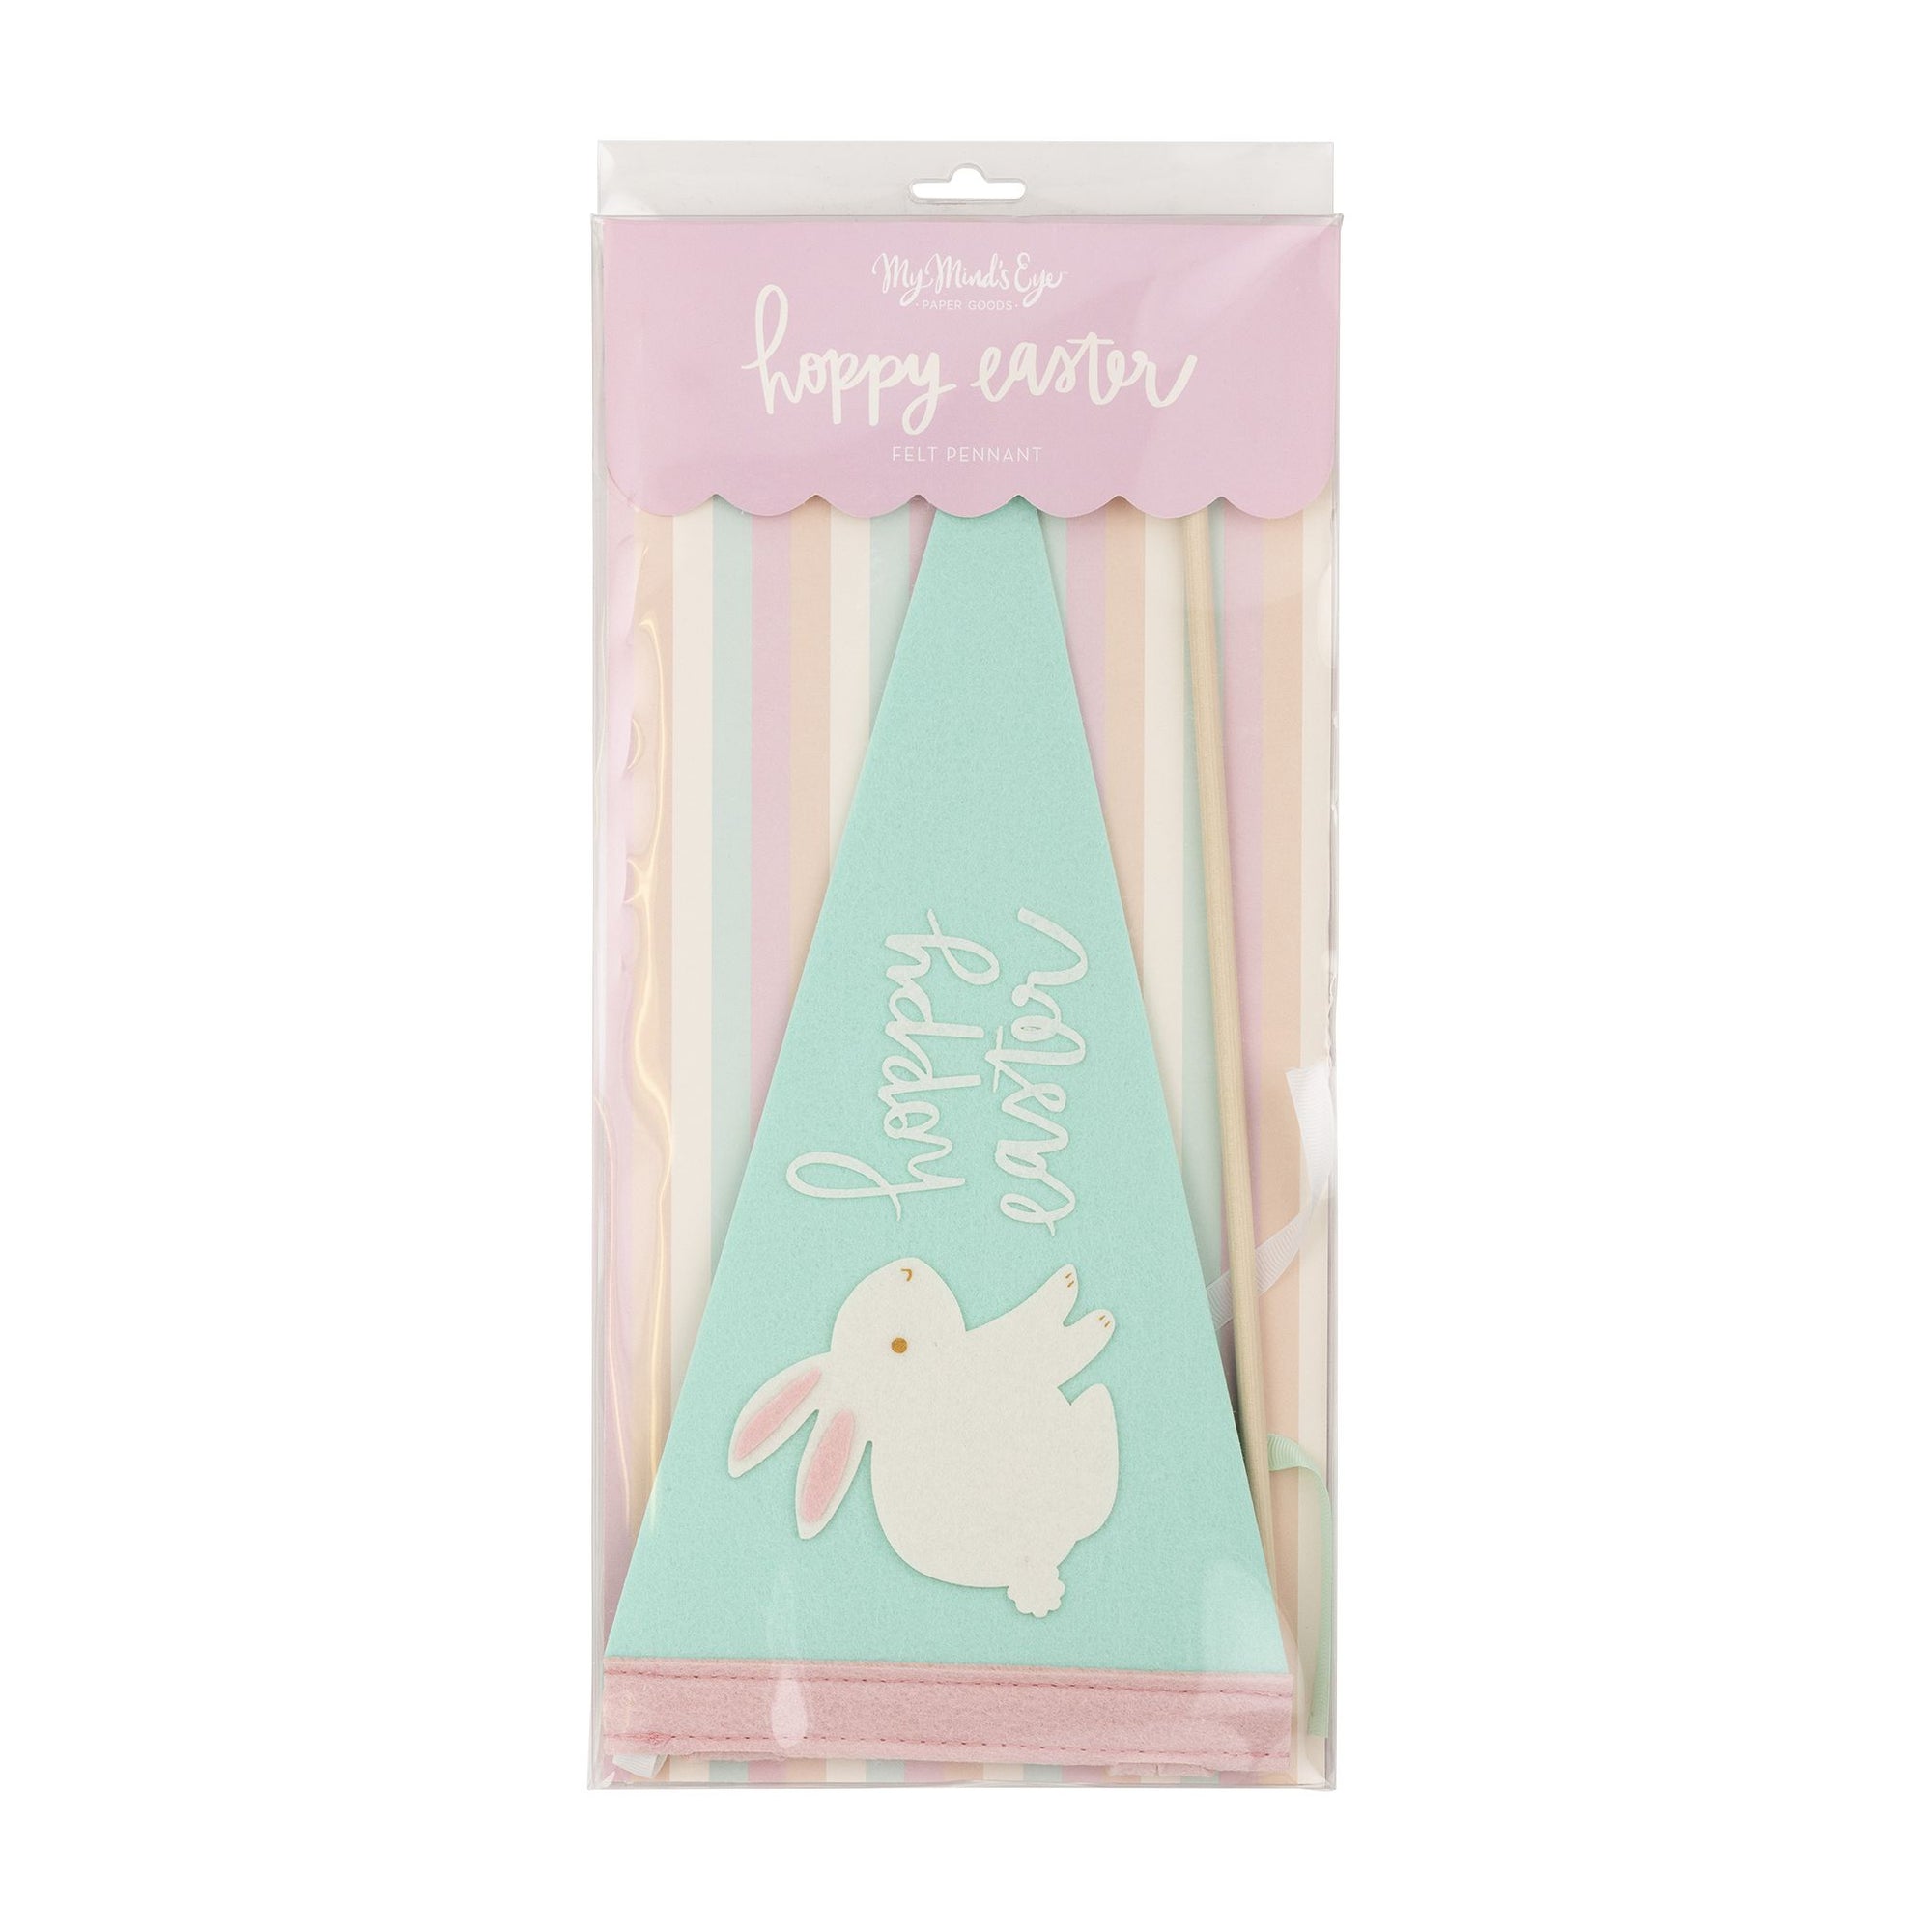 Hoppy Easter Felt Pennant Banner - The Preppy Bunny